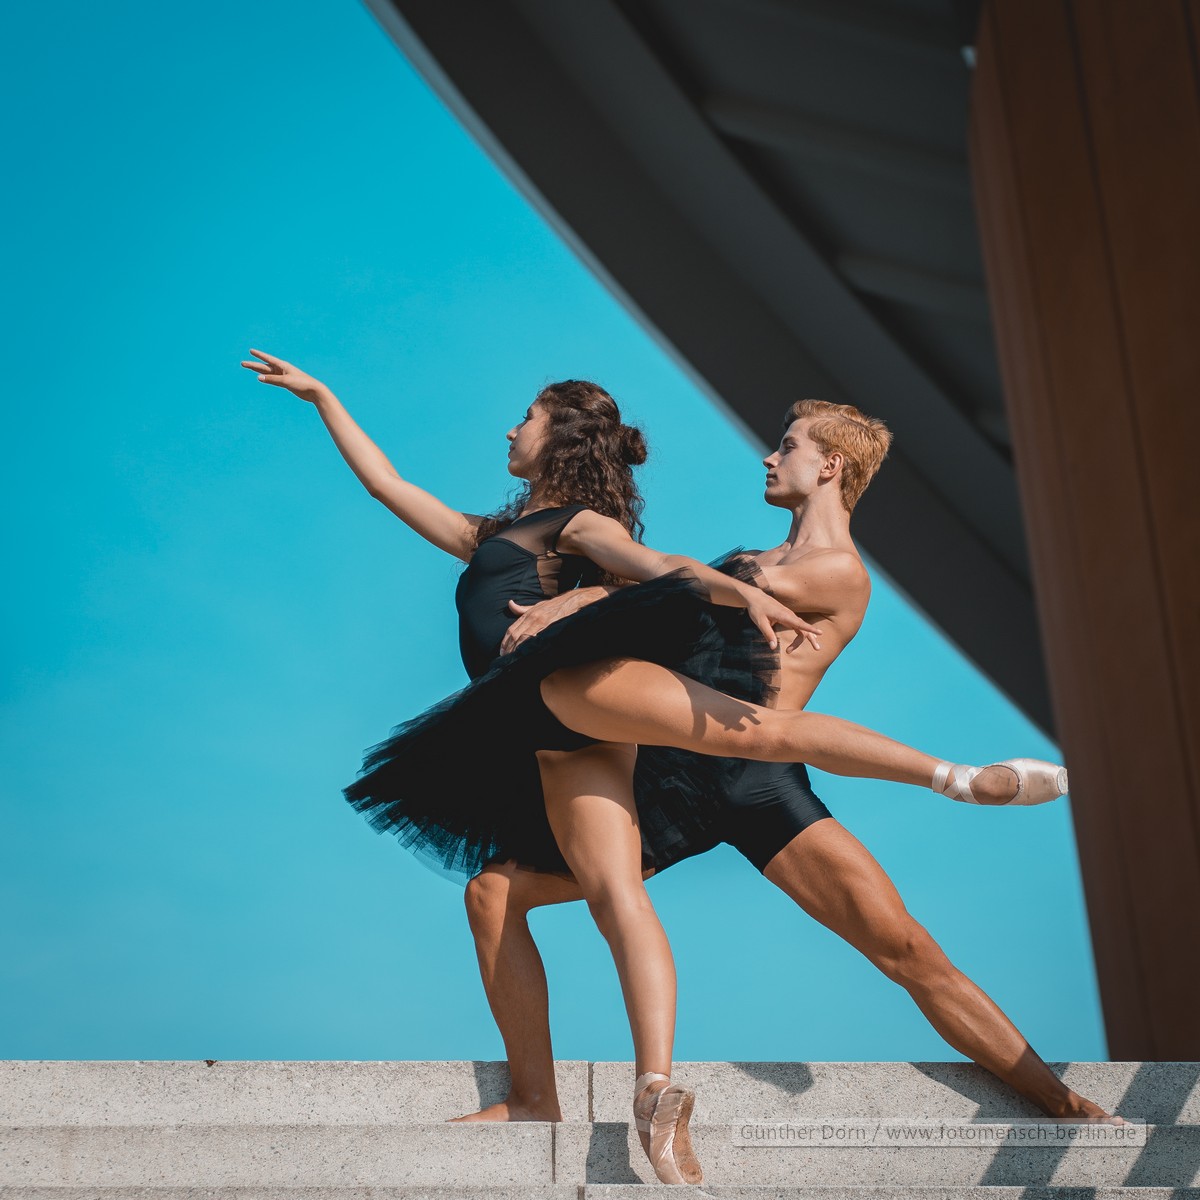 https://www.fotomensch-berlin.de/wp-content/uploads/2023/10/gd_0[000-999]-BallettKongressHauptbhf-Manuela-Terra-Rios-Vahrenkamp-und-Arturo-Lamolda-Mir-craw.jpg